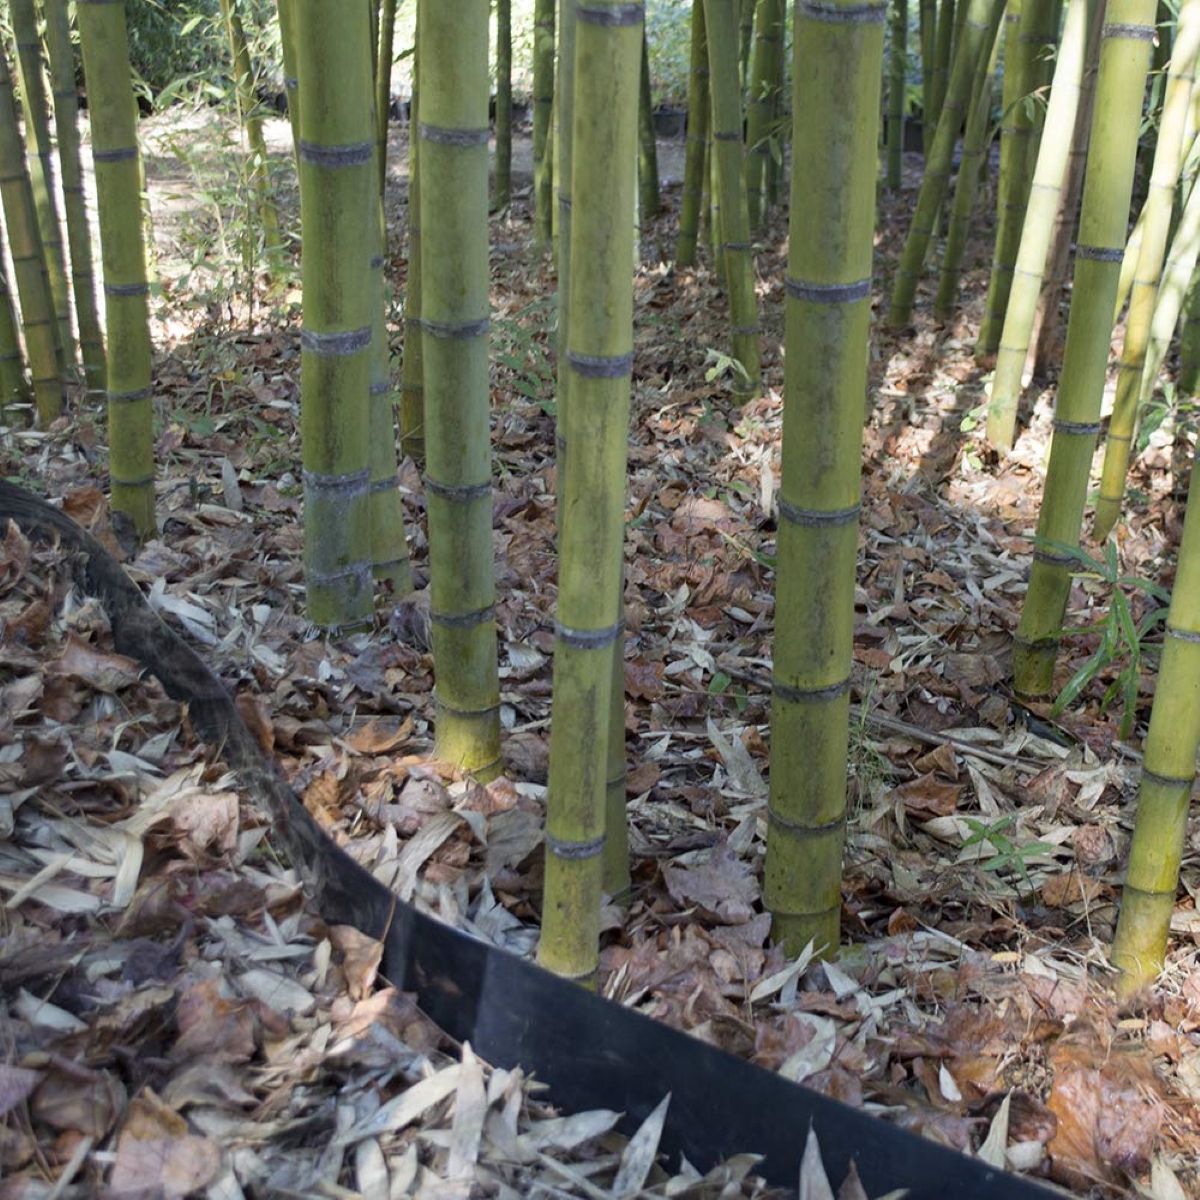 Bamboo plastic shield around bamboo